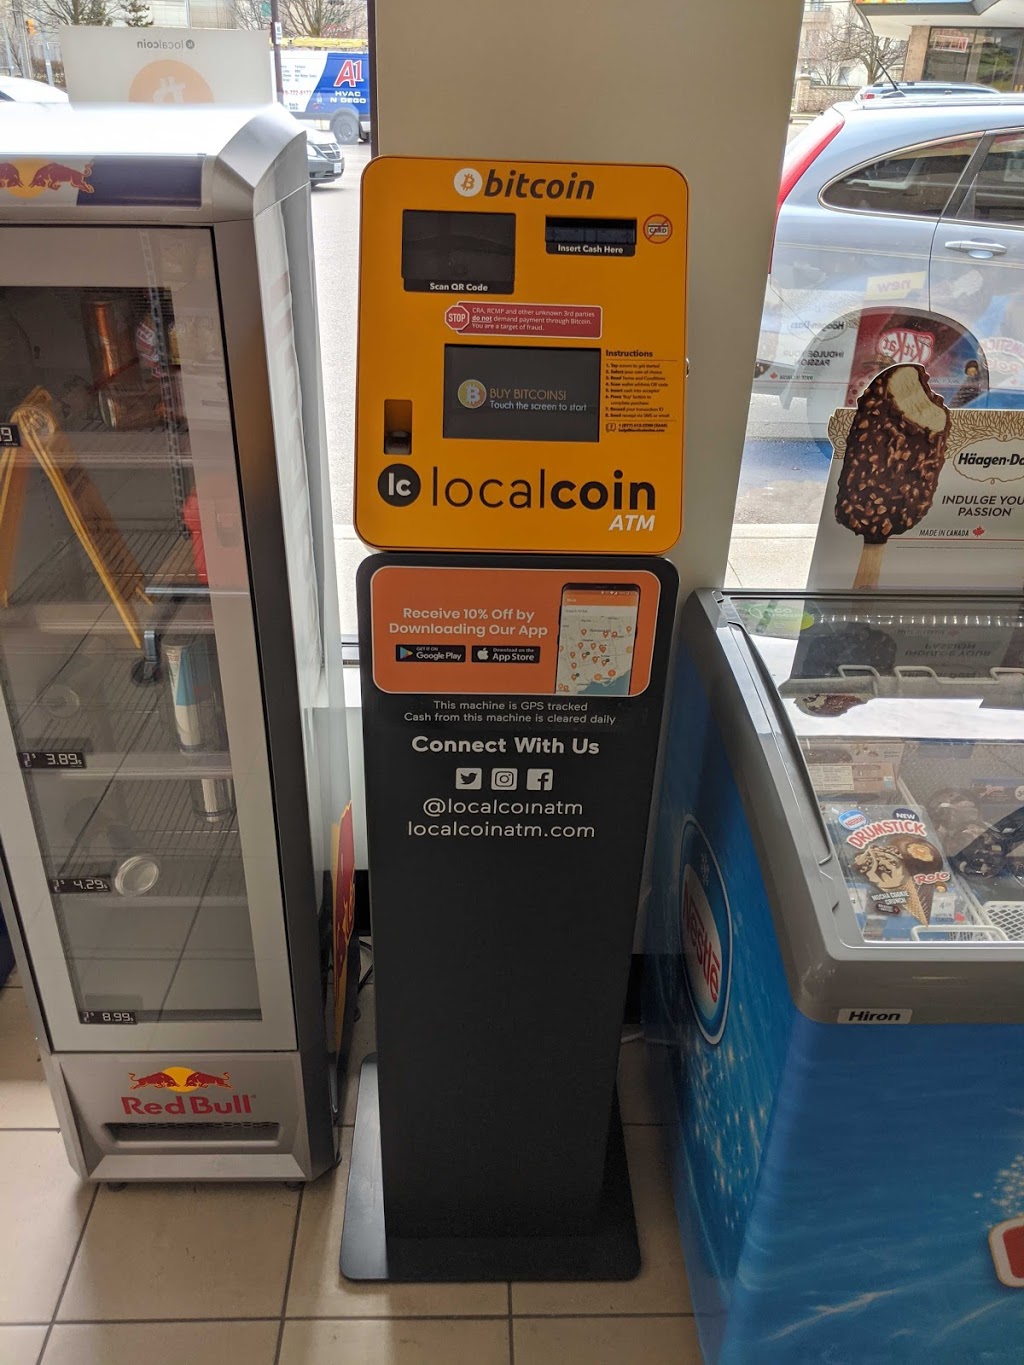 a 1- a bitcoin